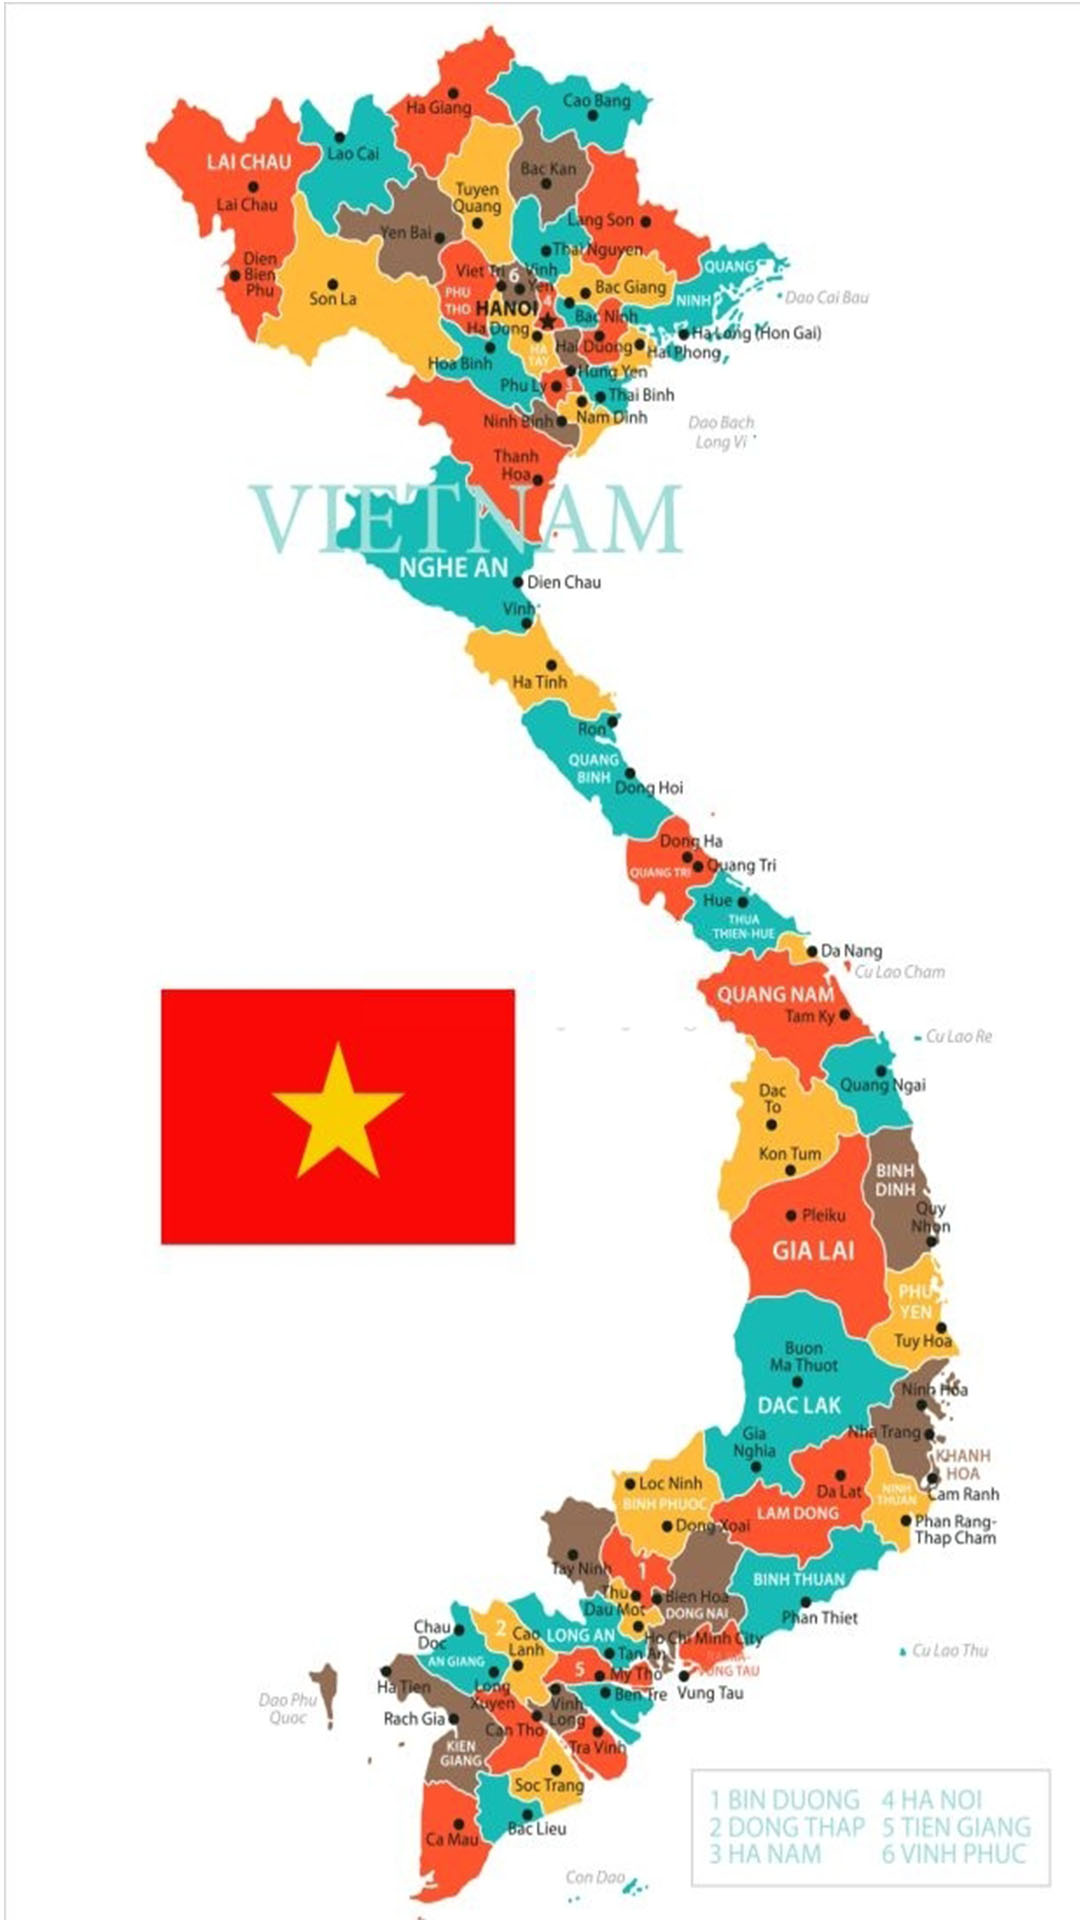 Với hình nền cờ Việt Nam, bạn không chỉ đang thể hiện sự yêu quý đất nước mà còn truyền tải thông điệp về sự đoàn kết, thống nhất trong cộng đồng. Hãy lựa chọn cho mình những hình ảnh phản ánh đầy đủ tinh thần và giá trị của quốc kỳ đẹp này.